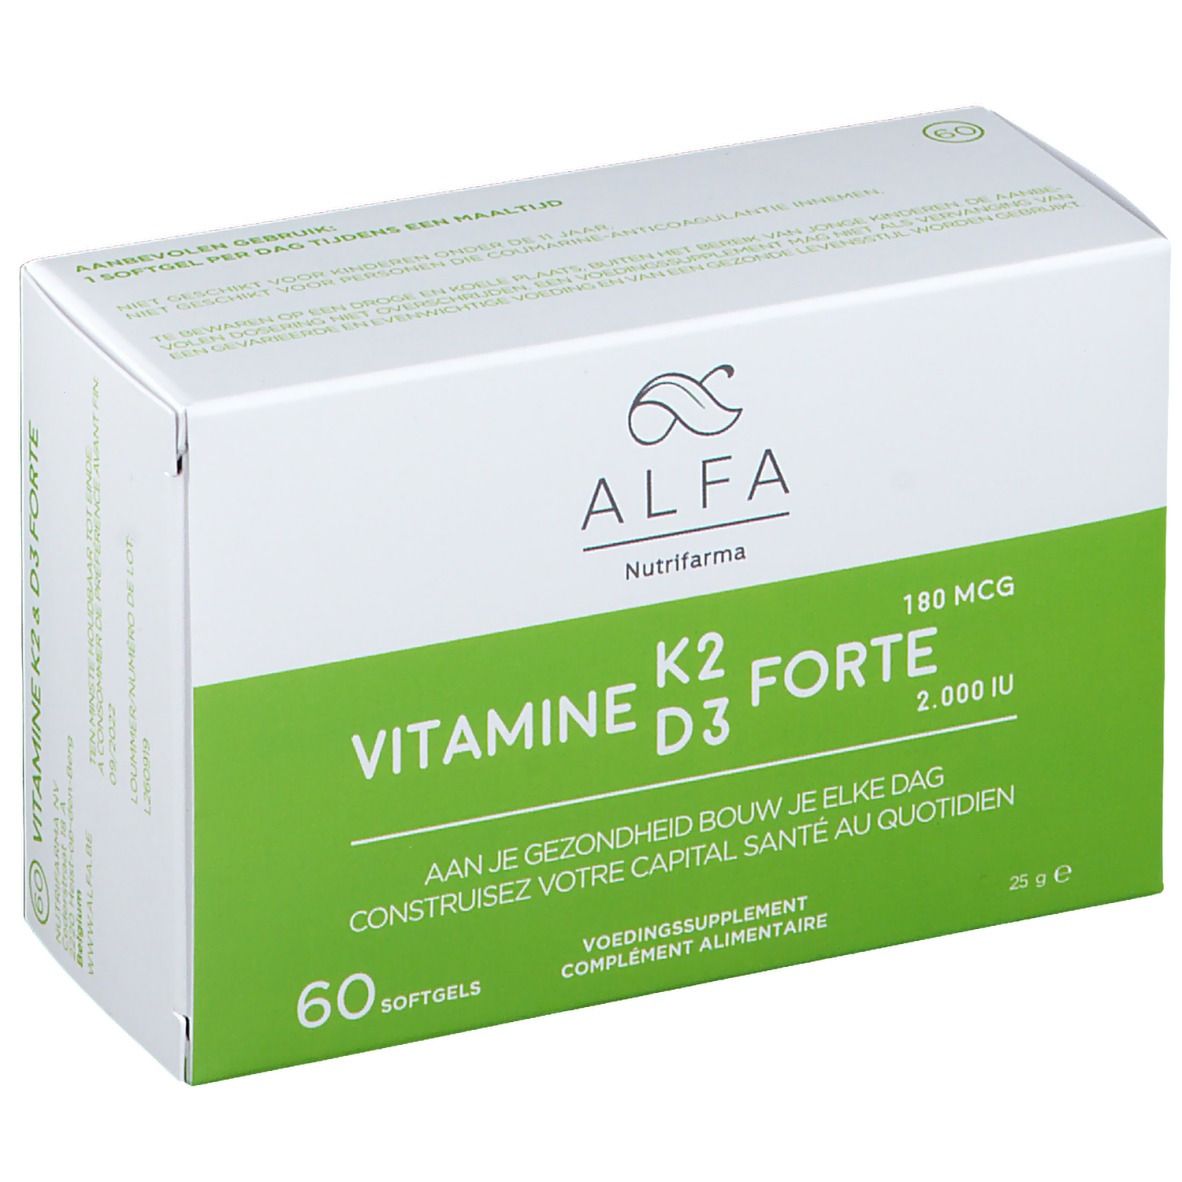 Image of ALFA Vitamin K2 D3 forte